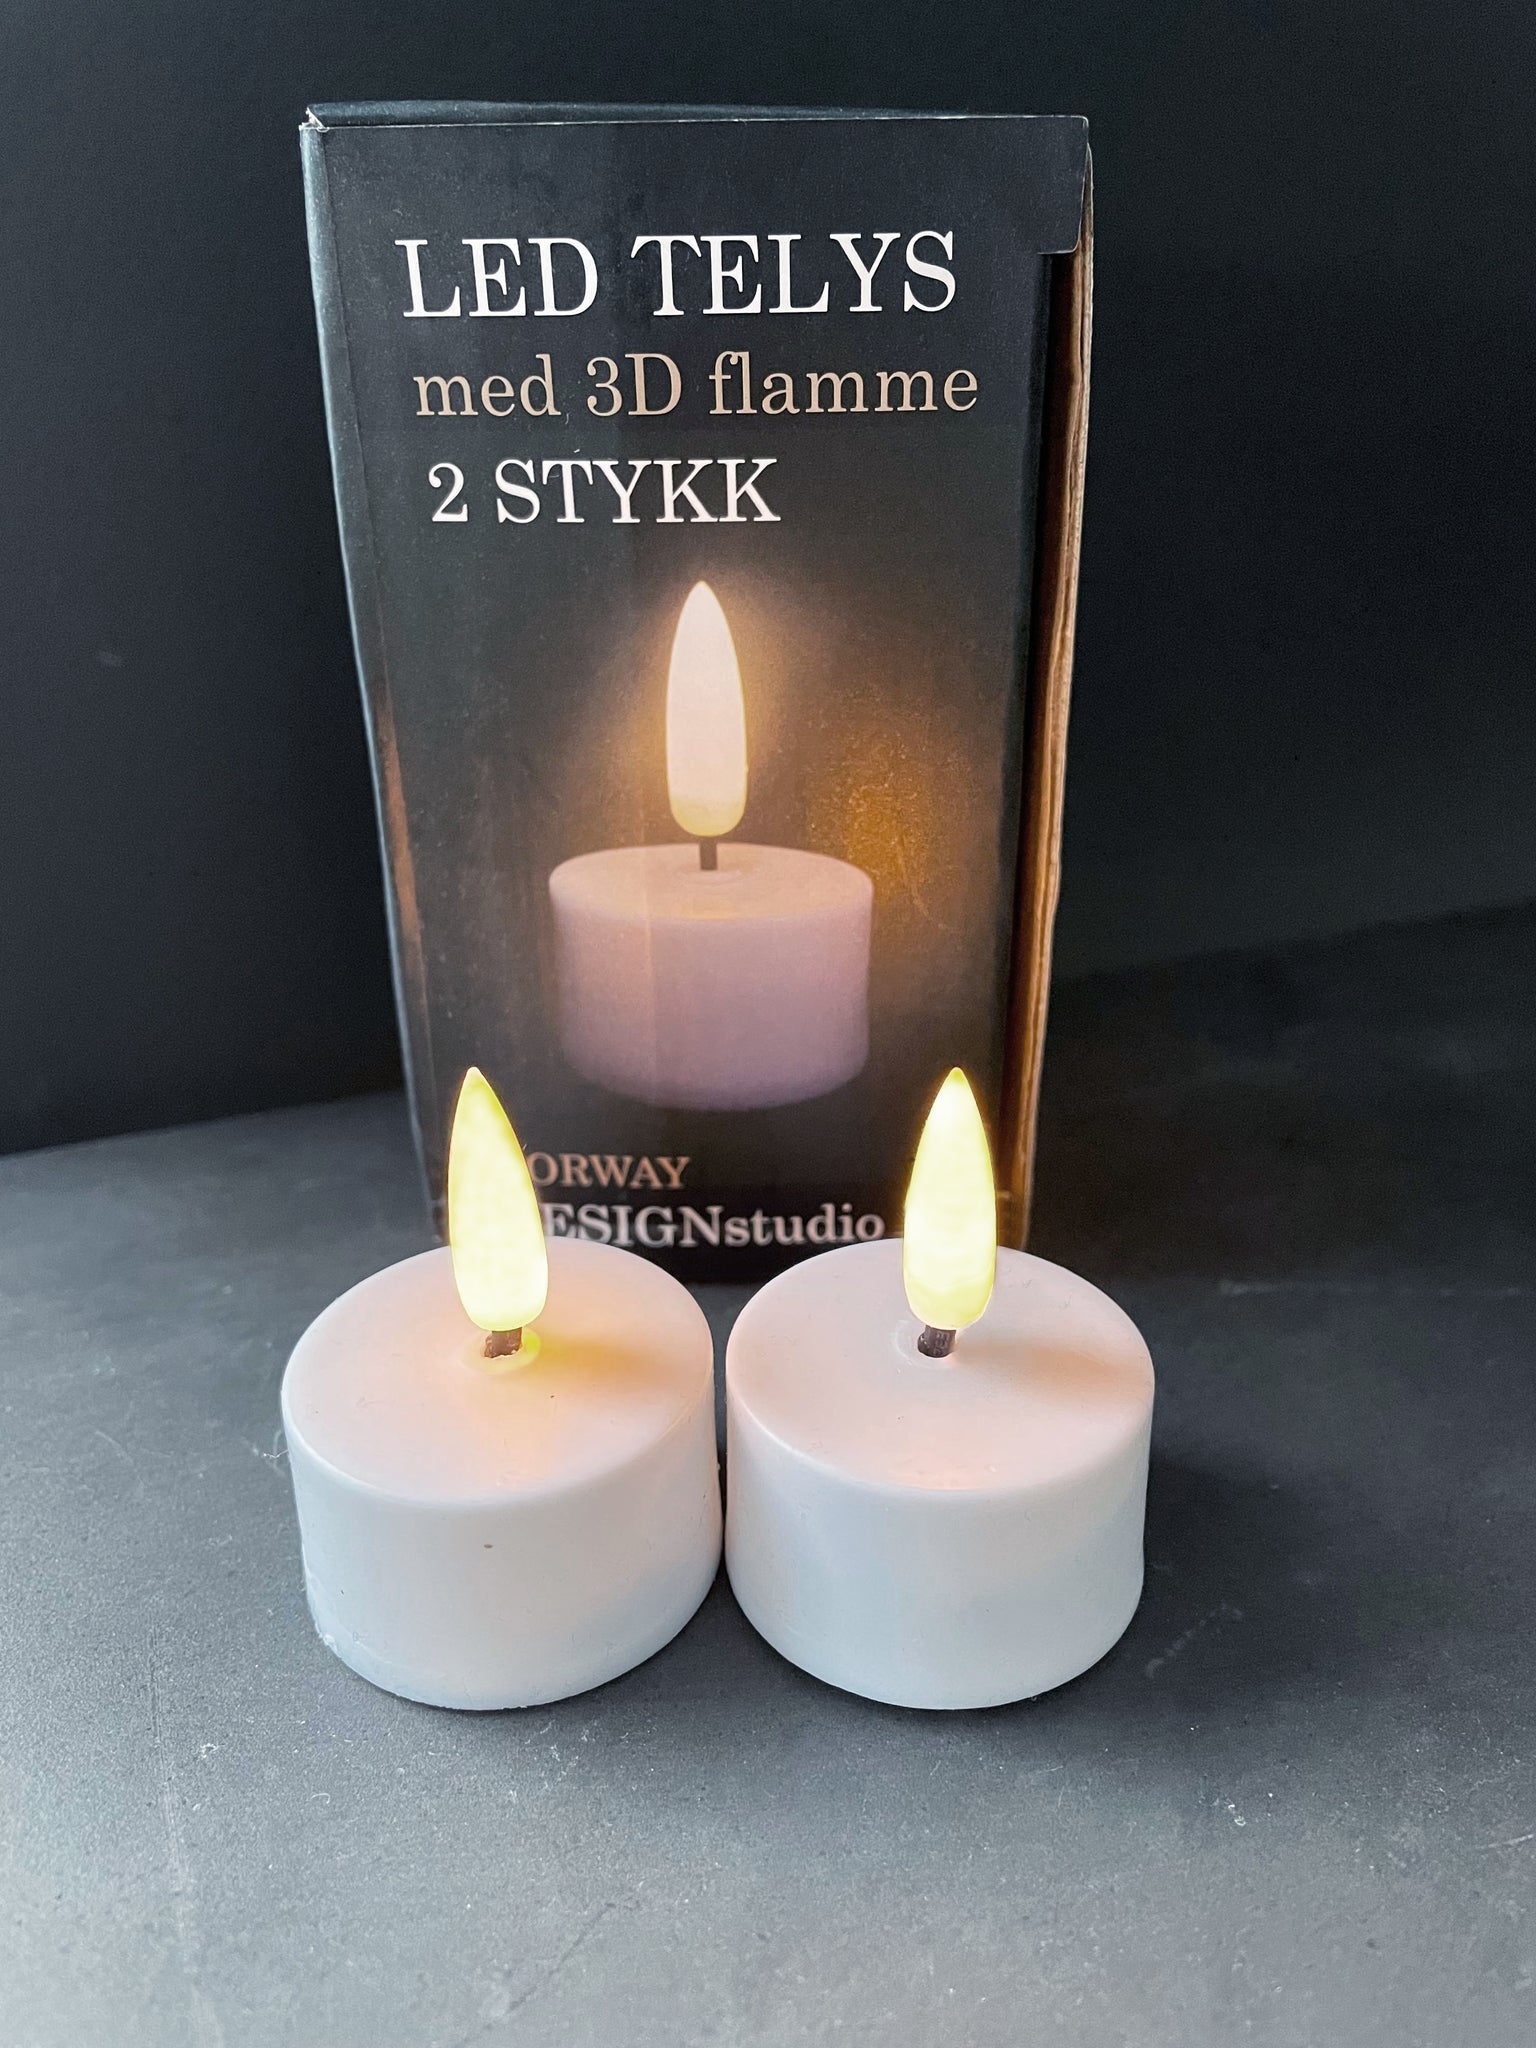 LED Telys med 3D flamme - 2 nå med ny og varmere flamme! – Norway DesignStudio